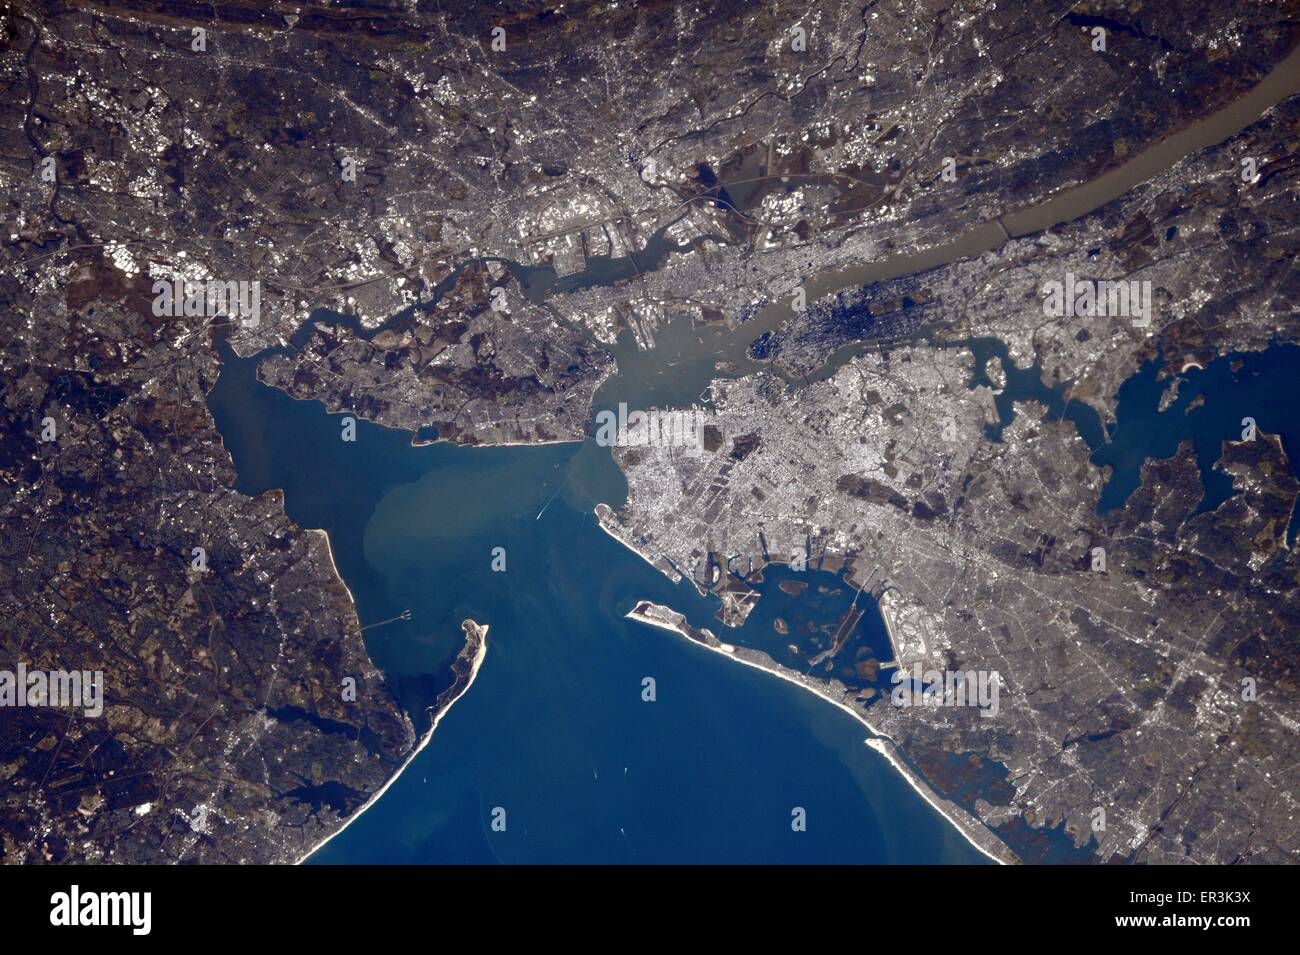 Vista desde la Estación Espacial Internacional de la ciudad de Nueva York y los alrededores del área metropolitana en los Estados Unidos. Foto de stock